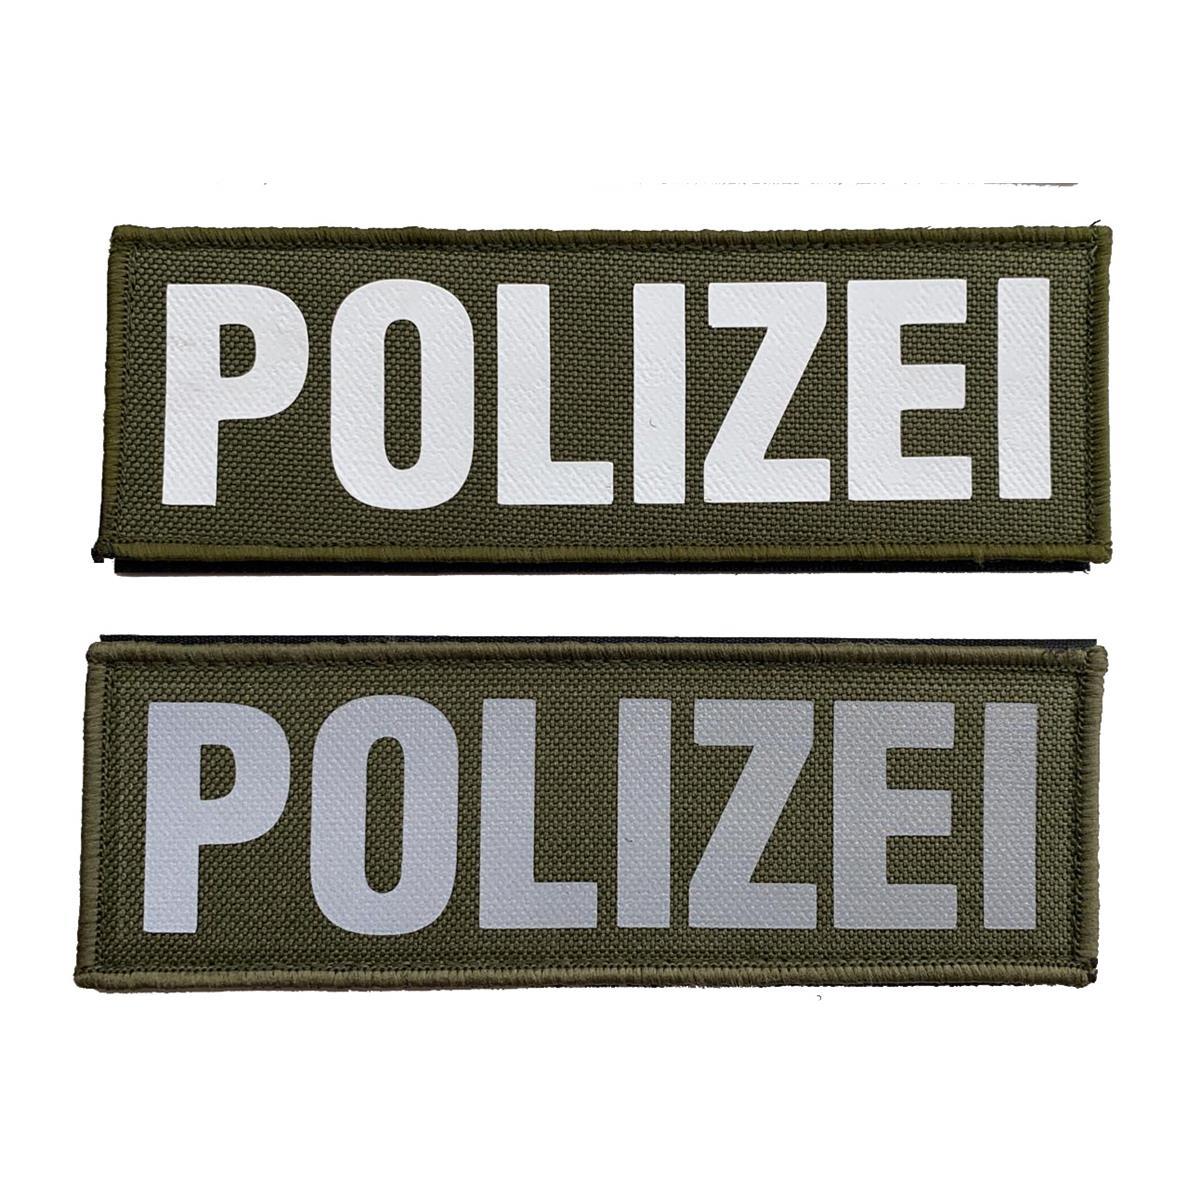 DEUTSCHLAND Fahne  Abzeichen gest 7,5 x 4,4  GSG-9  Polizei Patch BUNDESPOLIZEI 